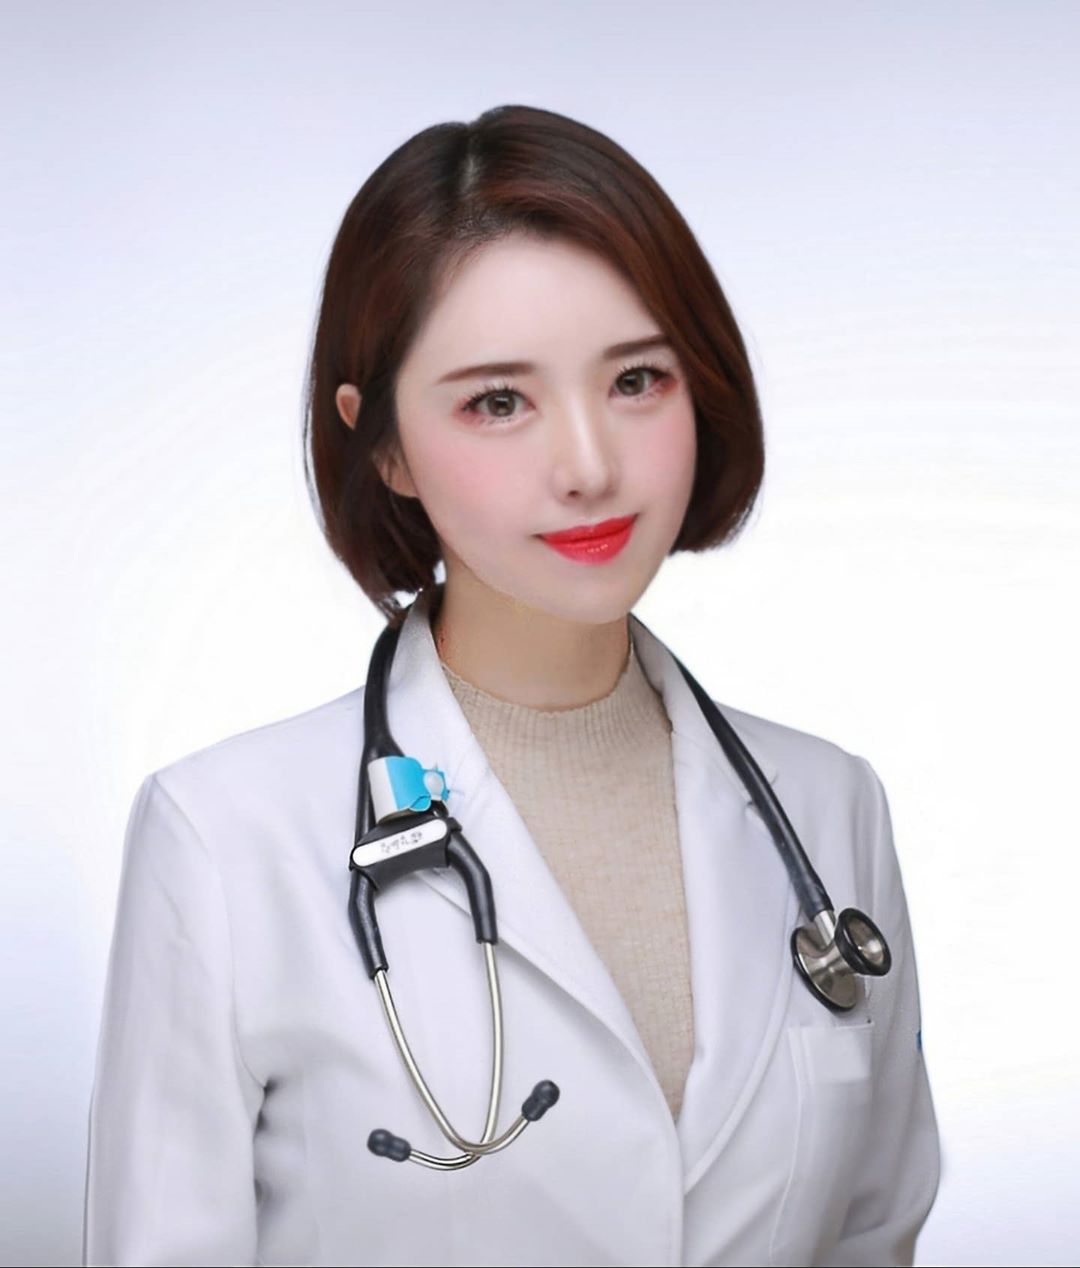 Hơn 999 hình ảnh bác sĩ nữ xinh đẹp – Bộ sưu tập đầy đủ hình ảnh bác sĩ nữ đẹp cực chất 4K